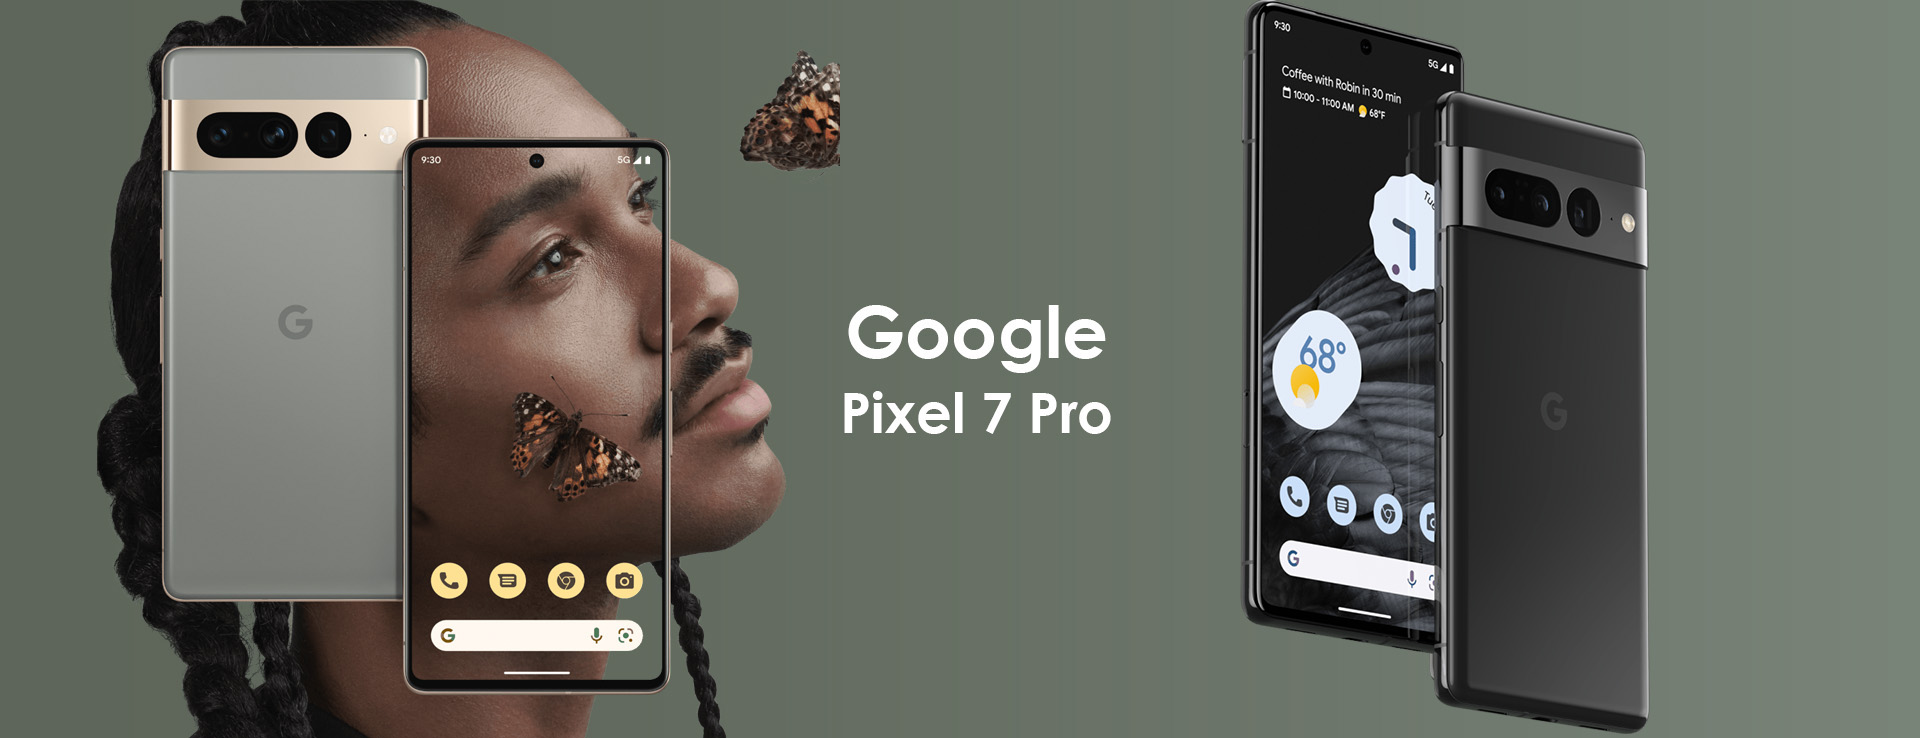 Google Pixel 7 Pro Obsidianl